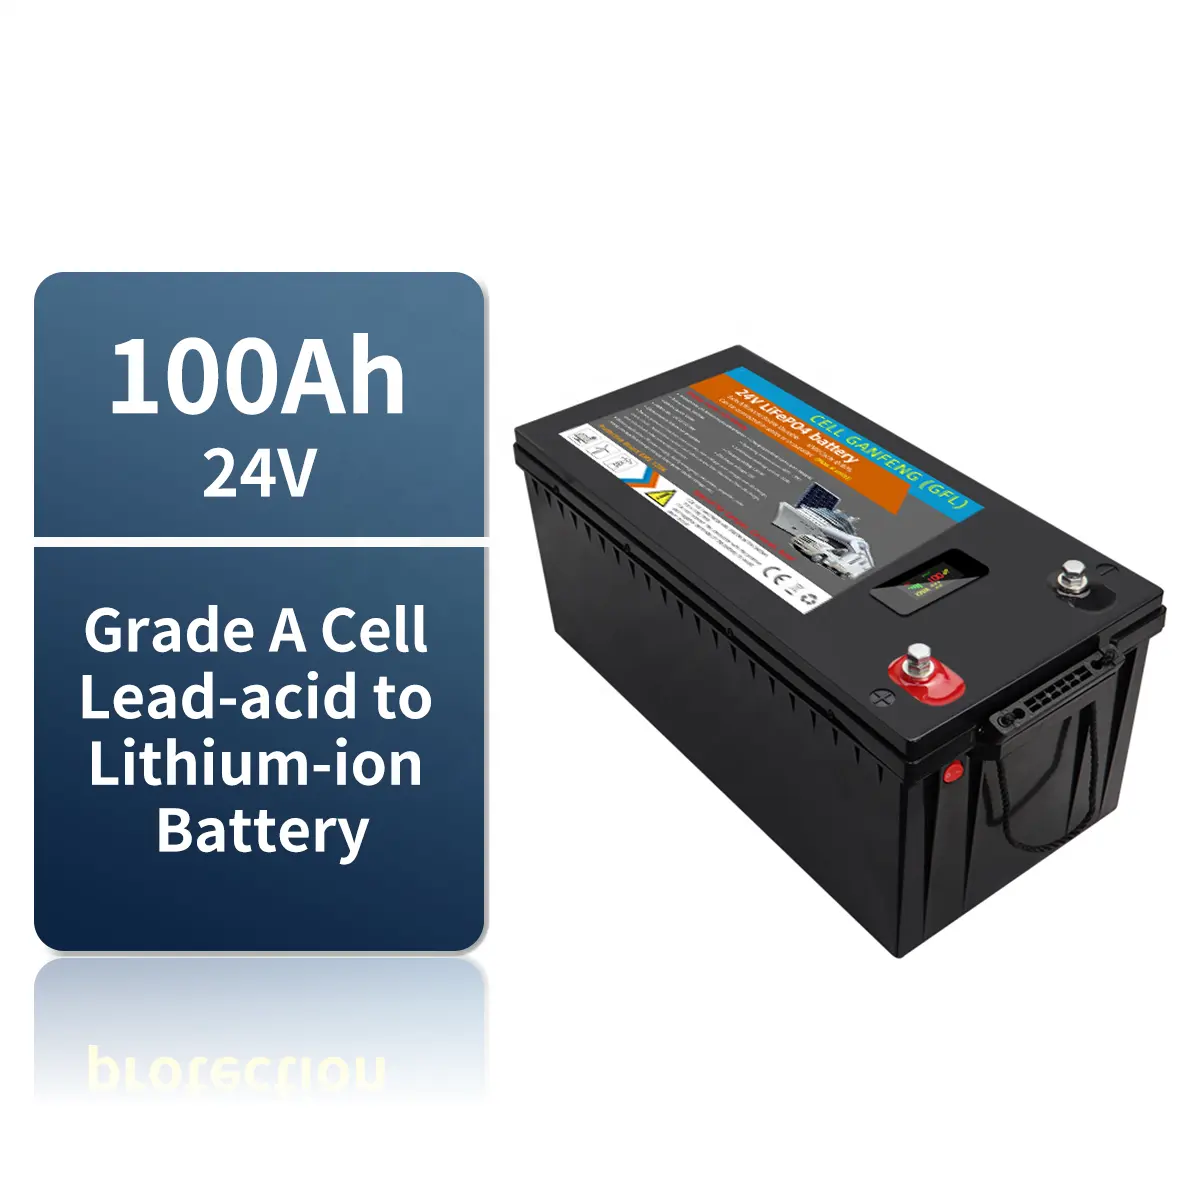 Kosten günstiges Lithium-Eisen der Klasse A 25,6 V 100A CE Kunden spezifischer Li-Ionen-Akku Fabrik preis Batterie für Solarstrom anlage